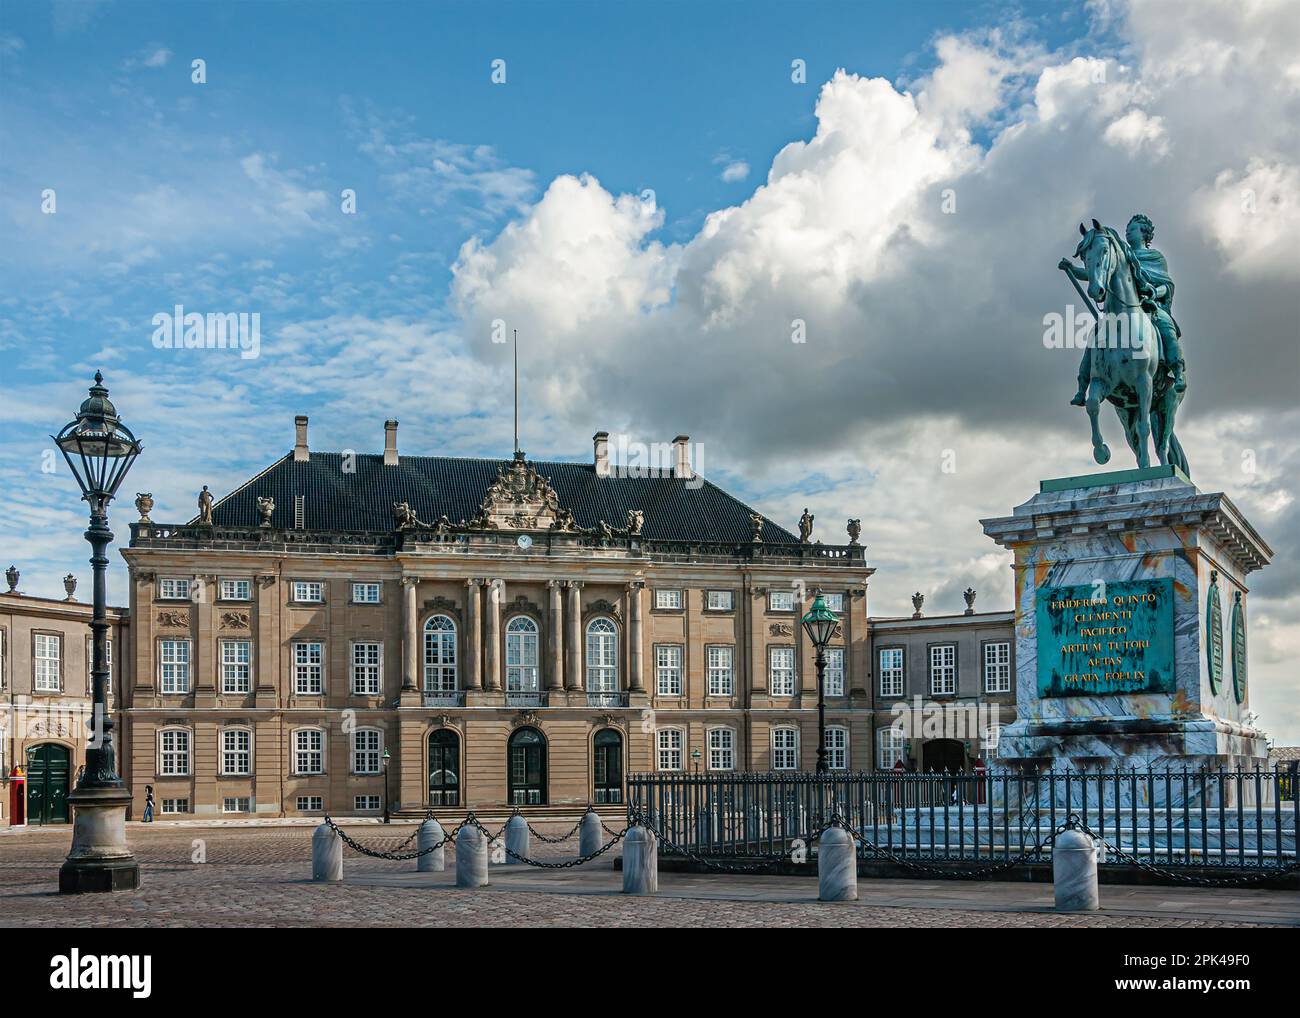 Copenaghen, Danimarca - 13 settembre 2010: Piazza Amalienborg. Frederik V statua equestre in bronzo verde su piedistallo in marmo sotto il paesaggio azzurro. Fred Foto Stock